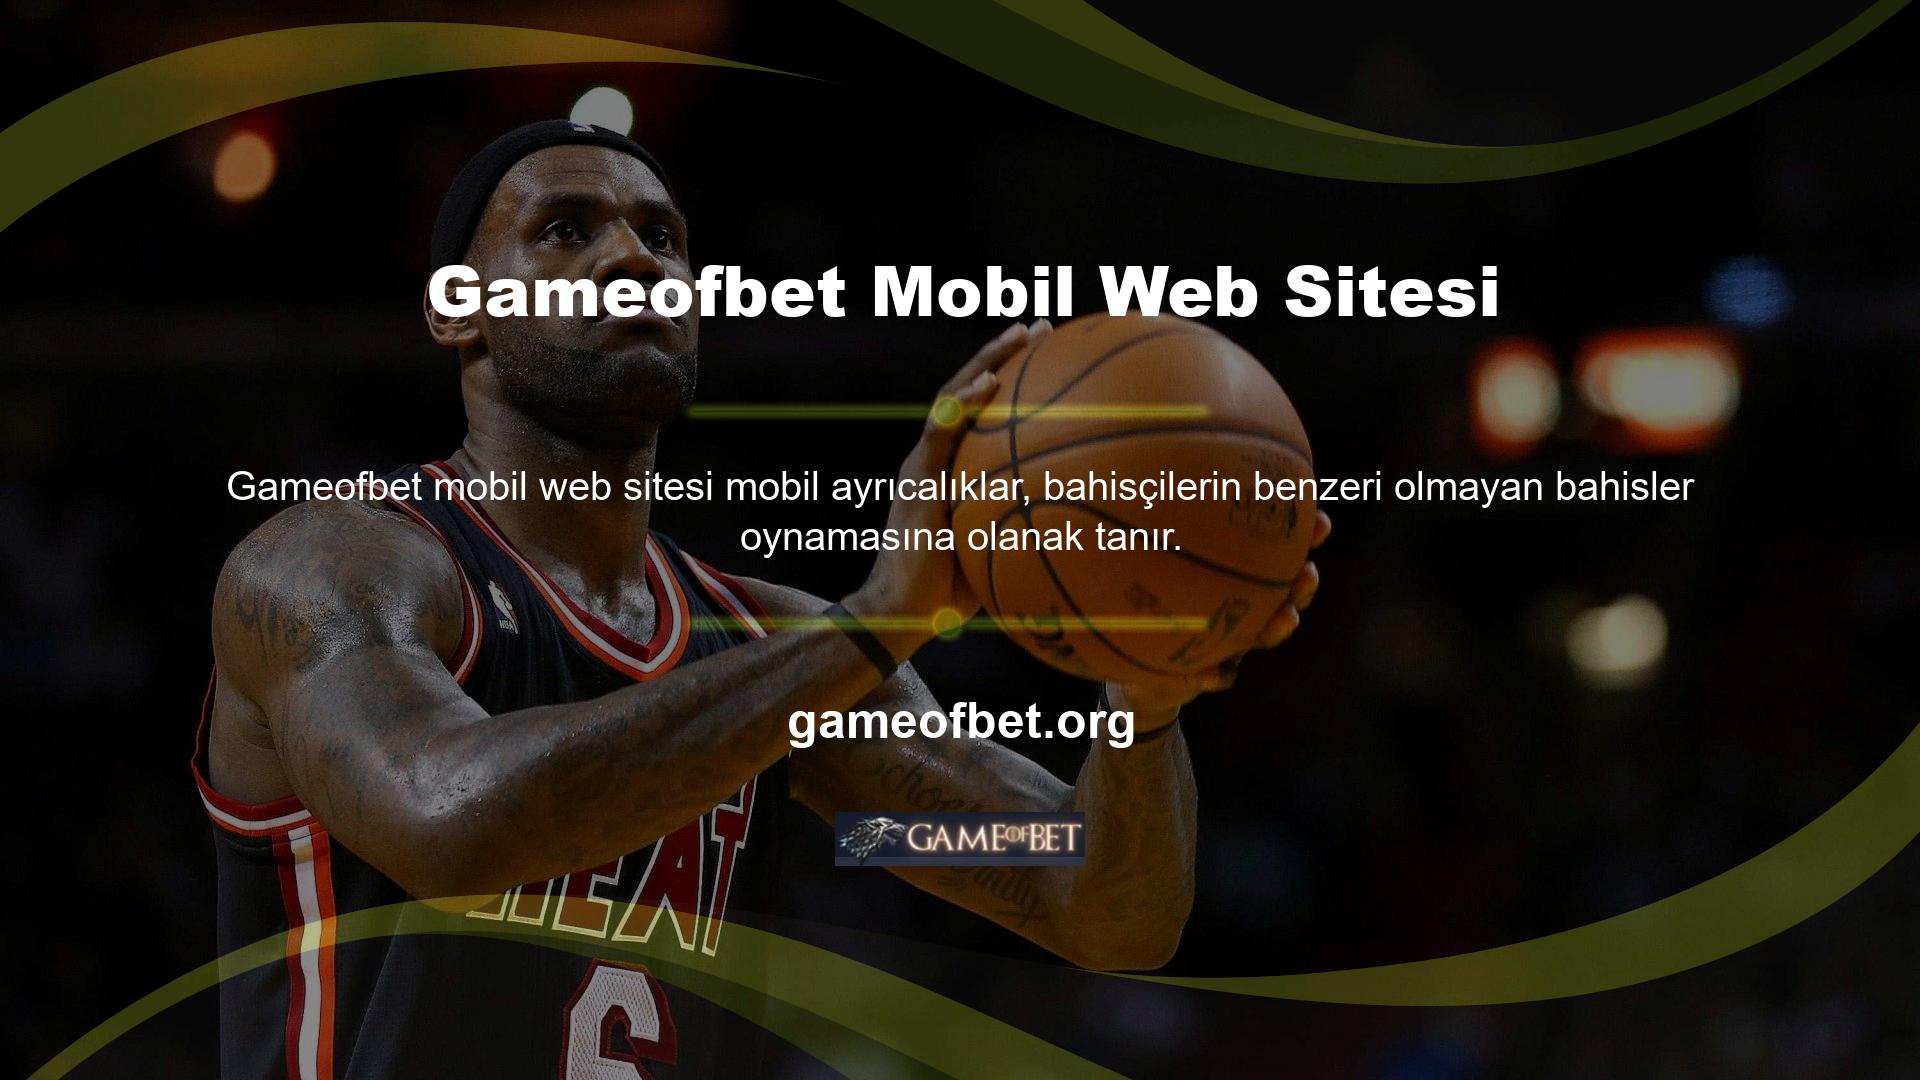 Gameofbet web sitesinin mobil tasarım seçeneği, bahisçilerin cep telefonu ve tablet gibi seçenekleri kullanarak işlem yapmalarına olanak sağlar